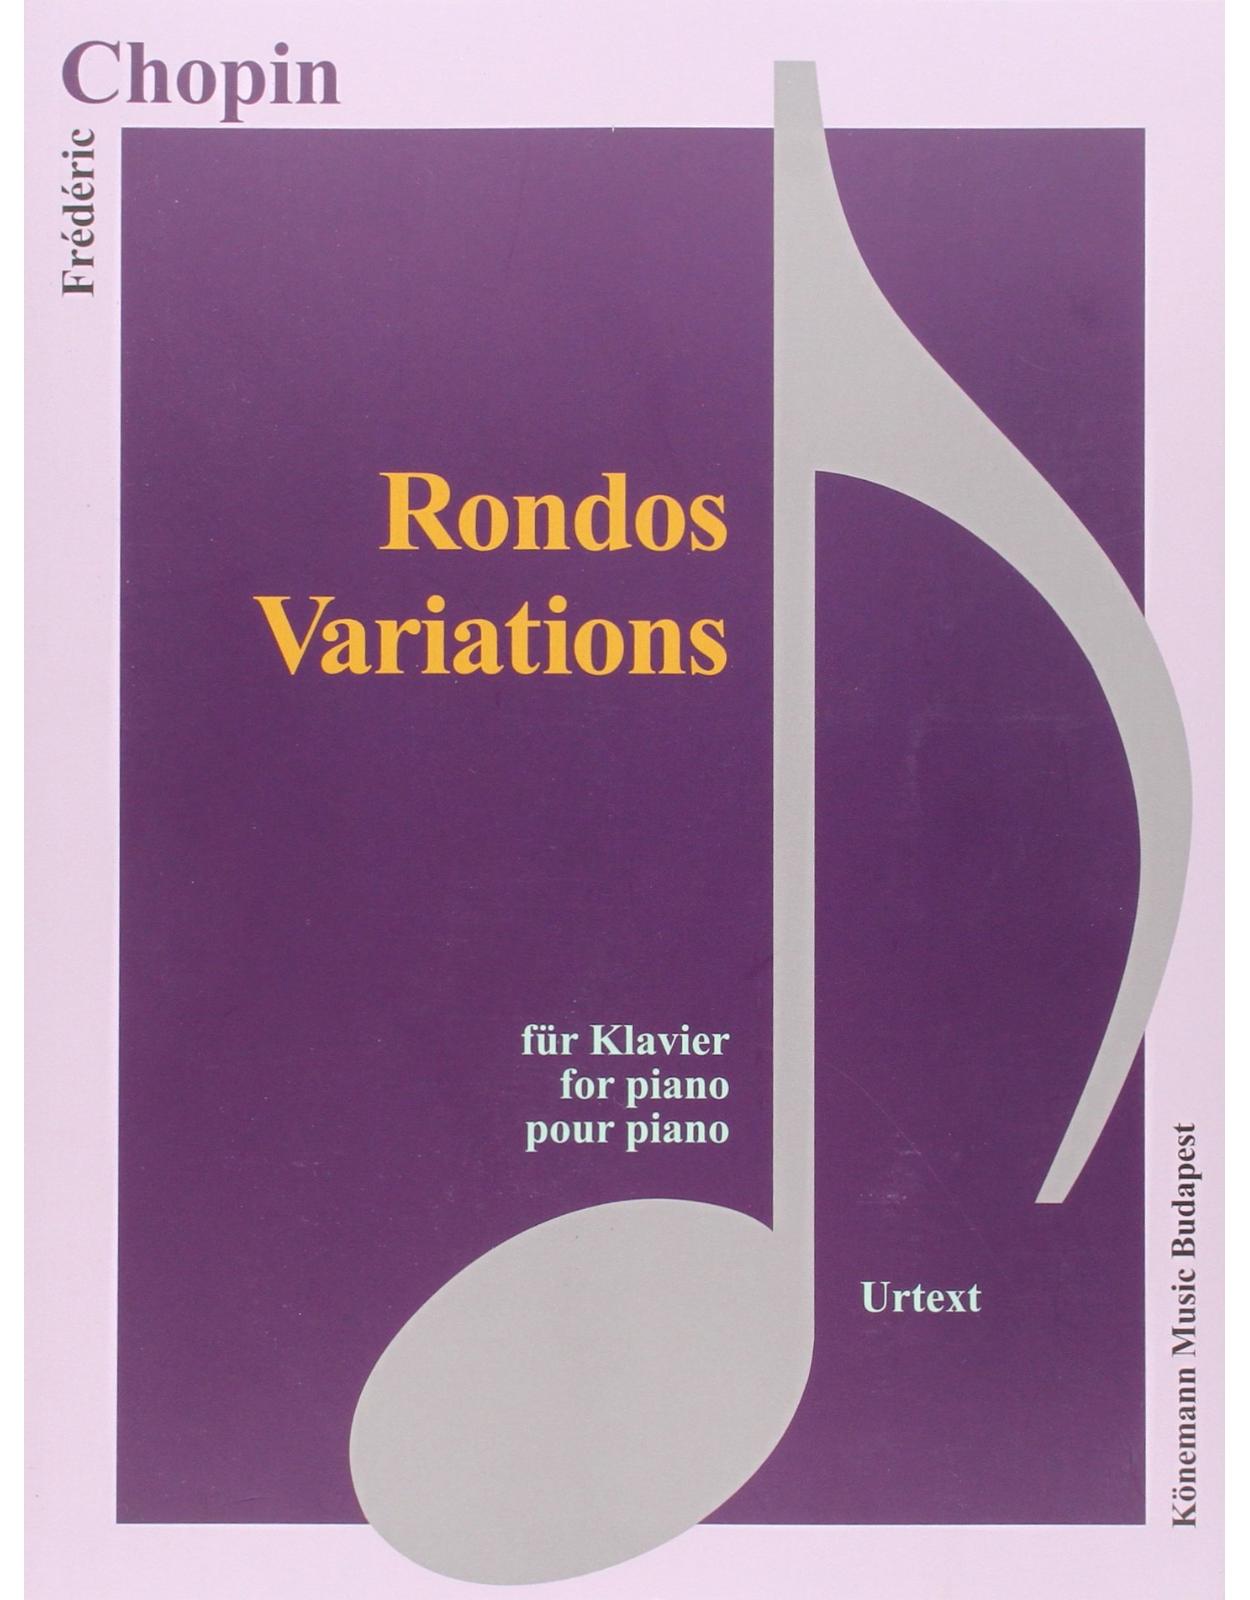 Chopin, Rondos, Variations 